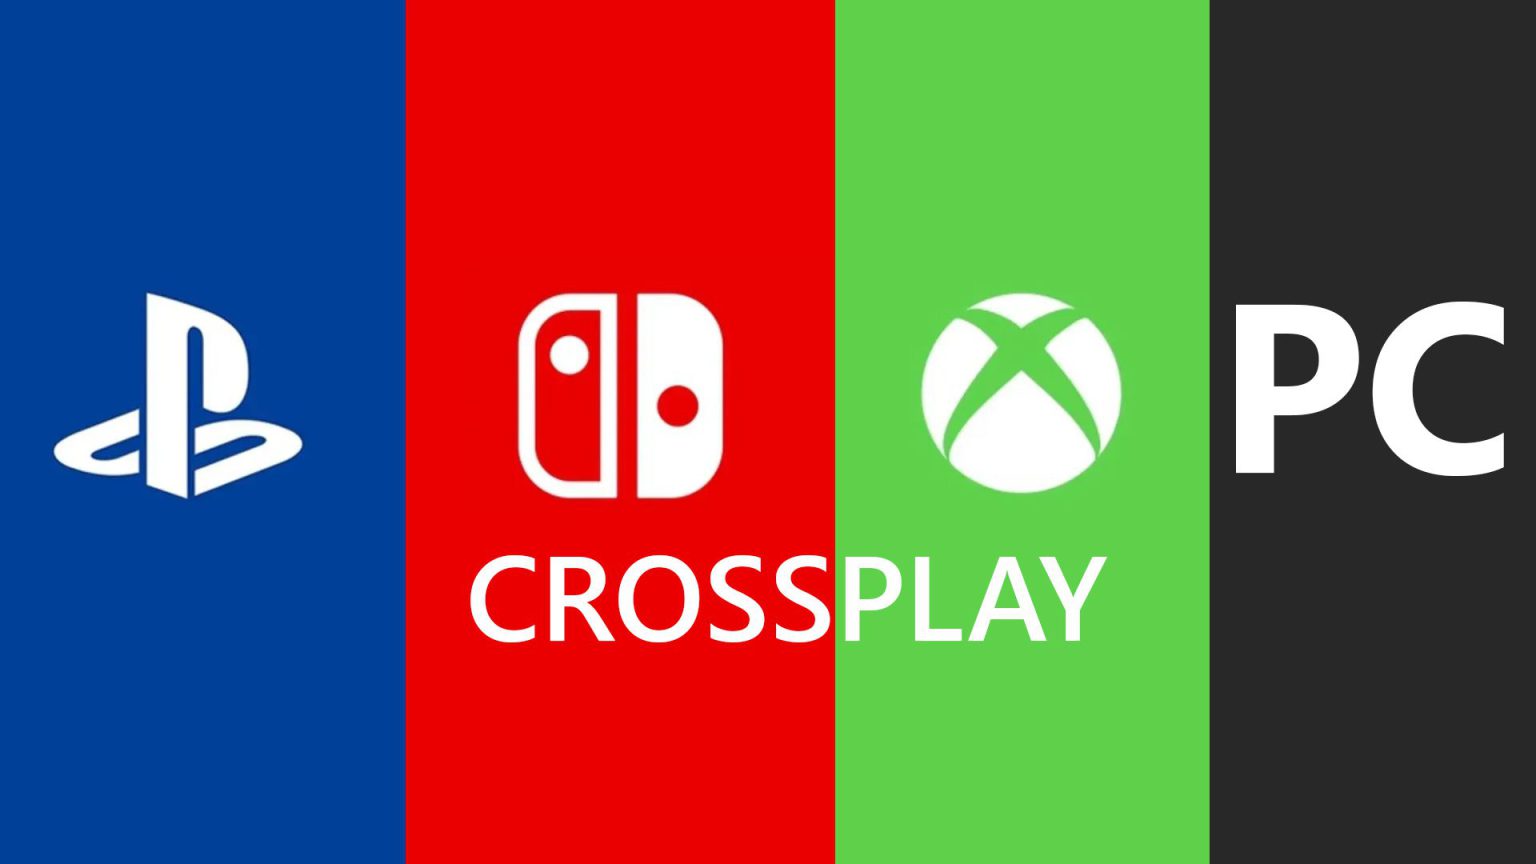 Recopilamos un listado de juegos con soporte para crossplay. Detallado por plataformas y próximos lanzamientos.